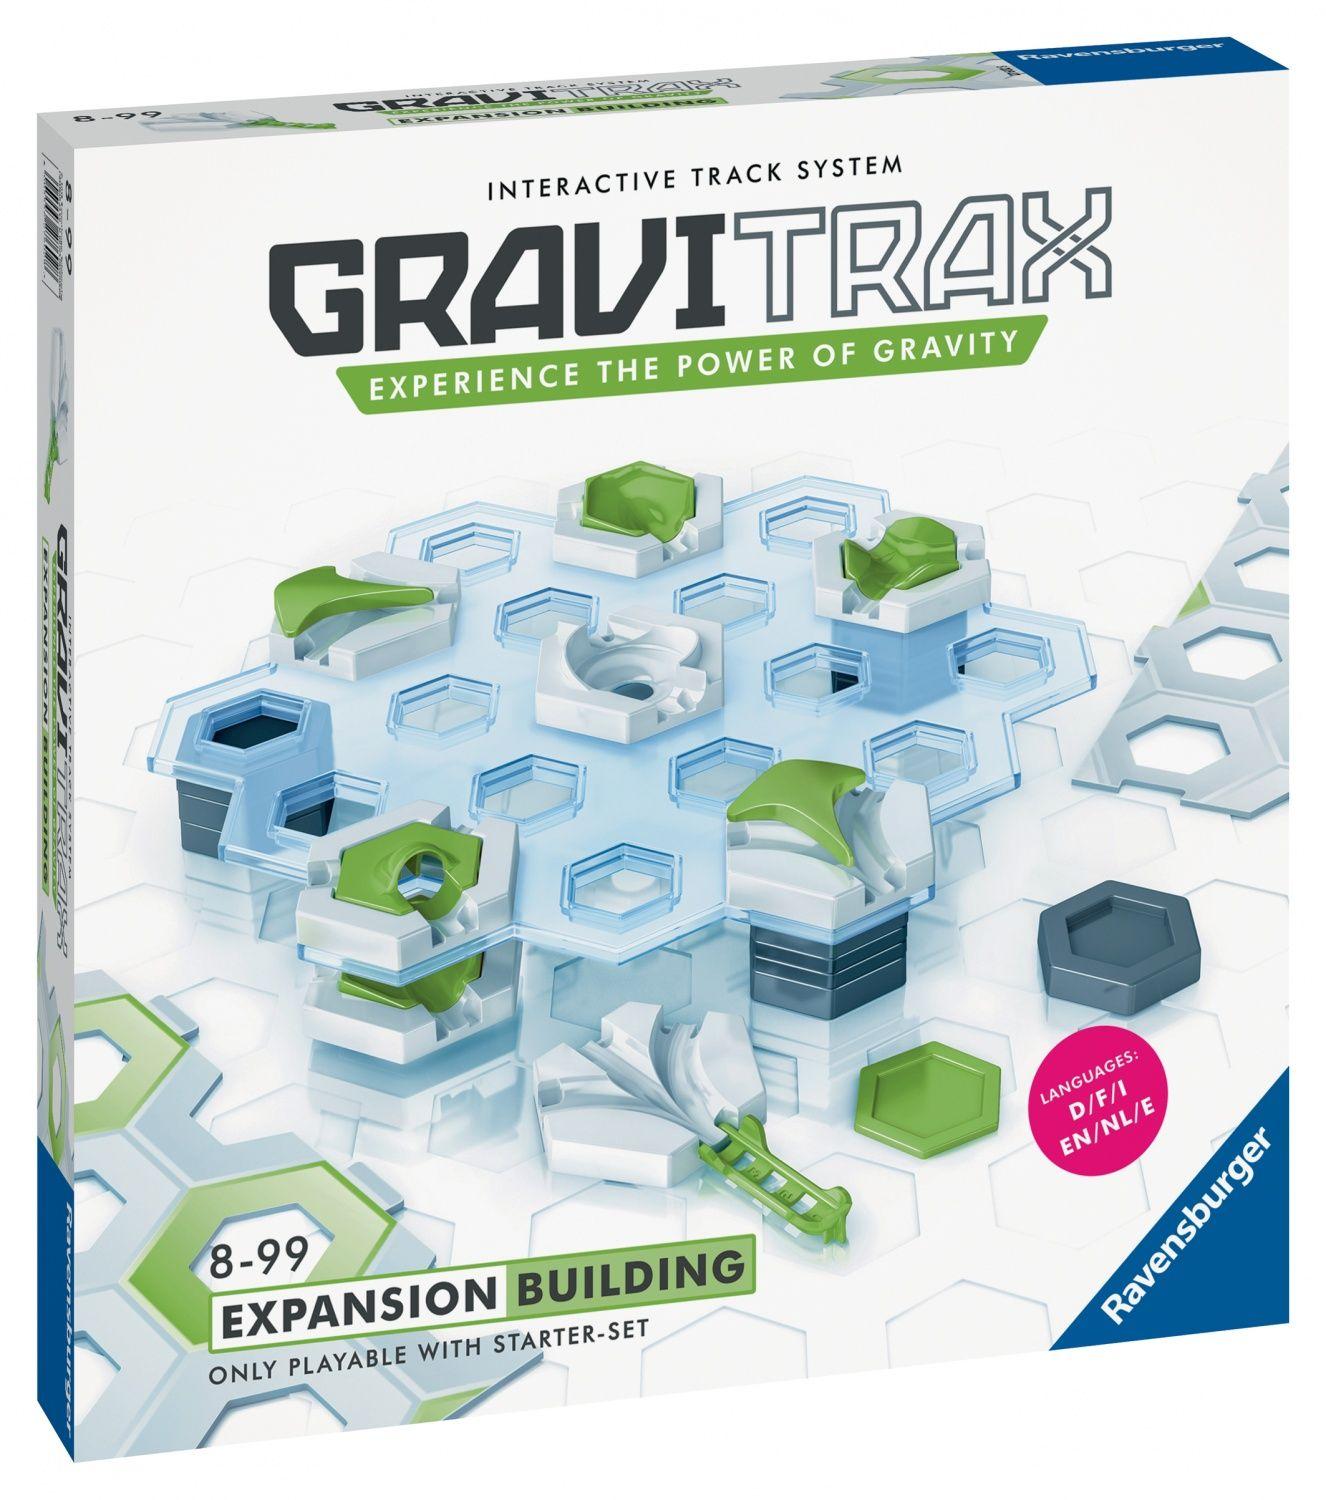 Circuit à billes : gravitrax : set d'extension tunnels Ravensburger